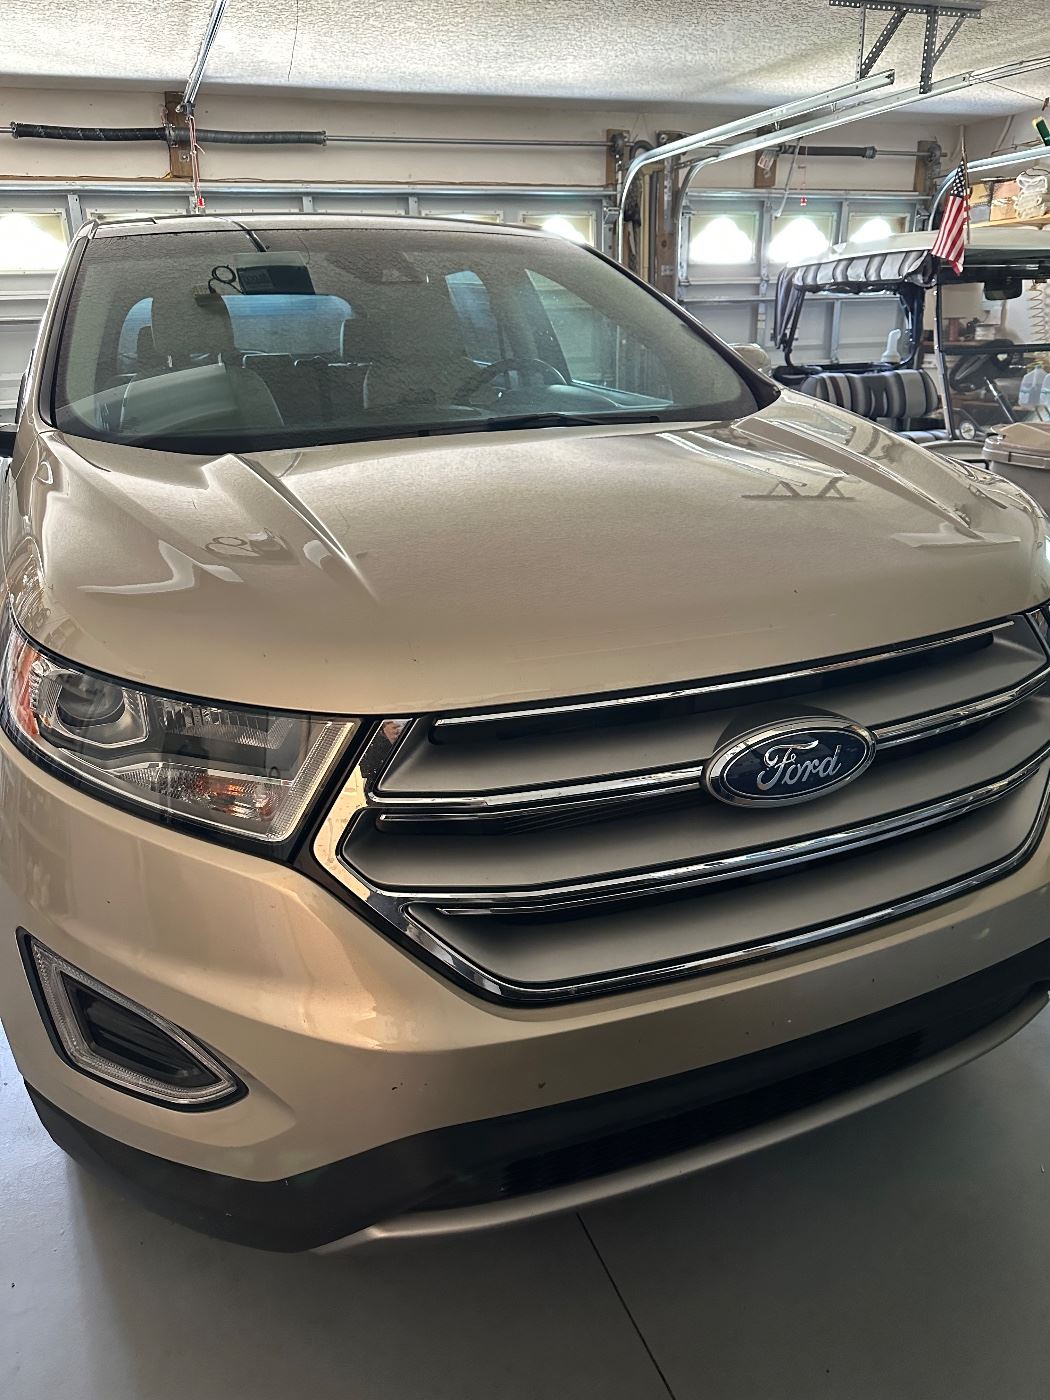 2018 Ford Edge, Titanium, 31,000 miles, leather interior, excellent condition! 